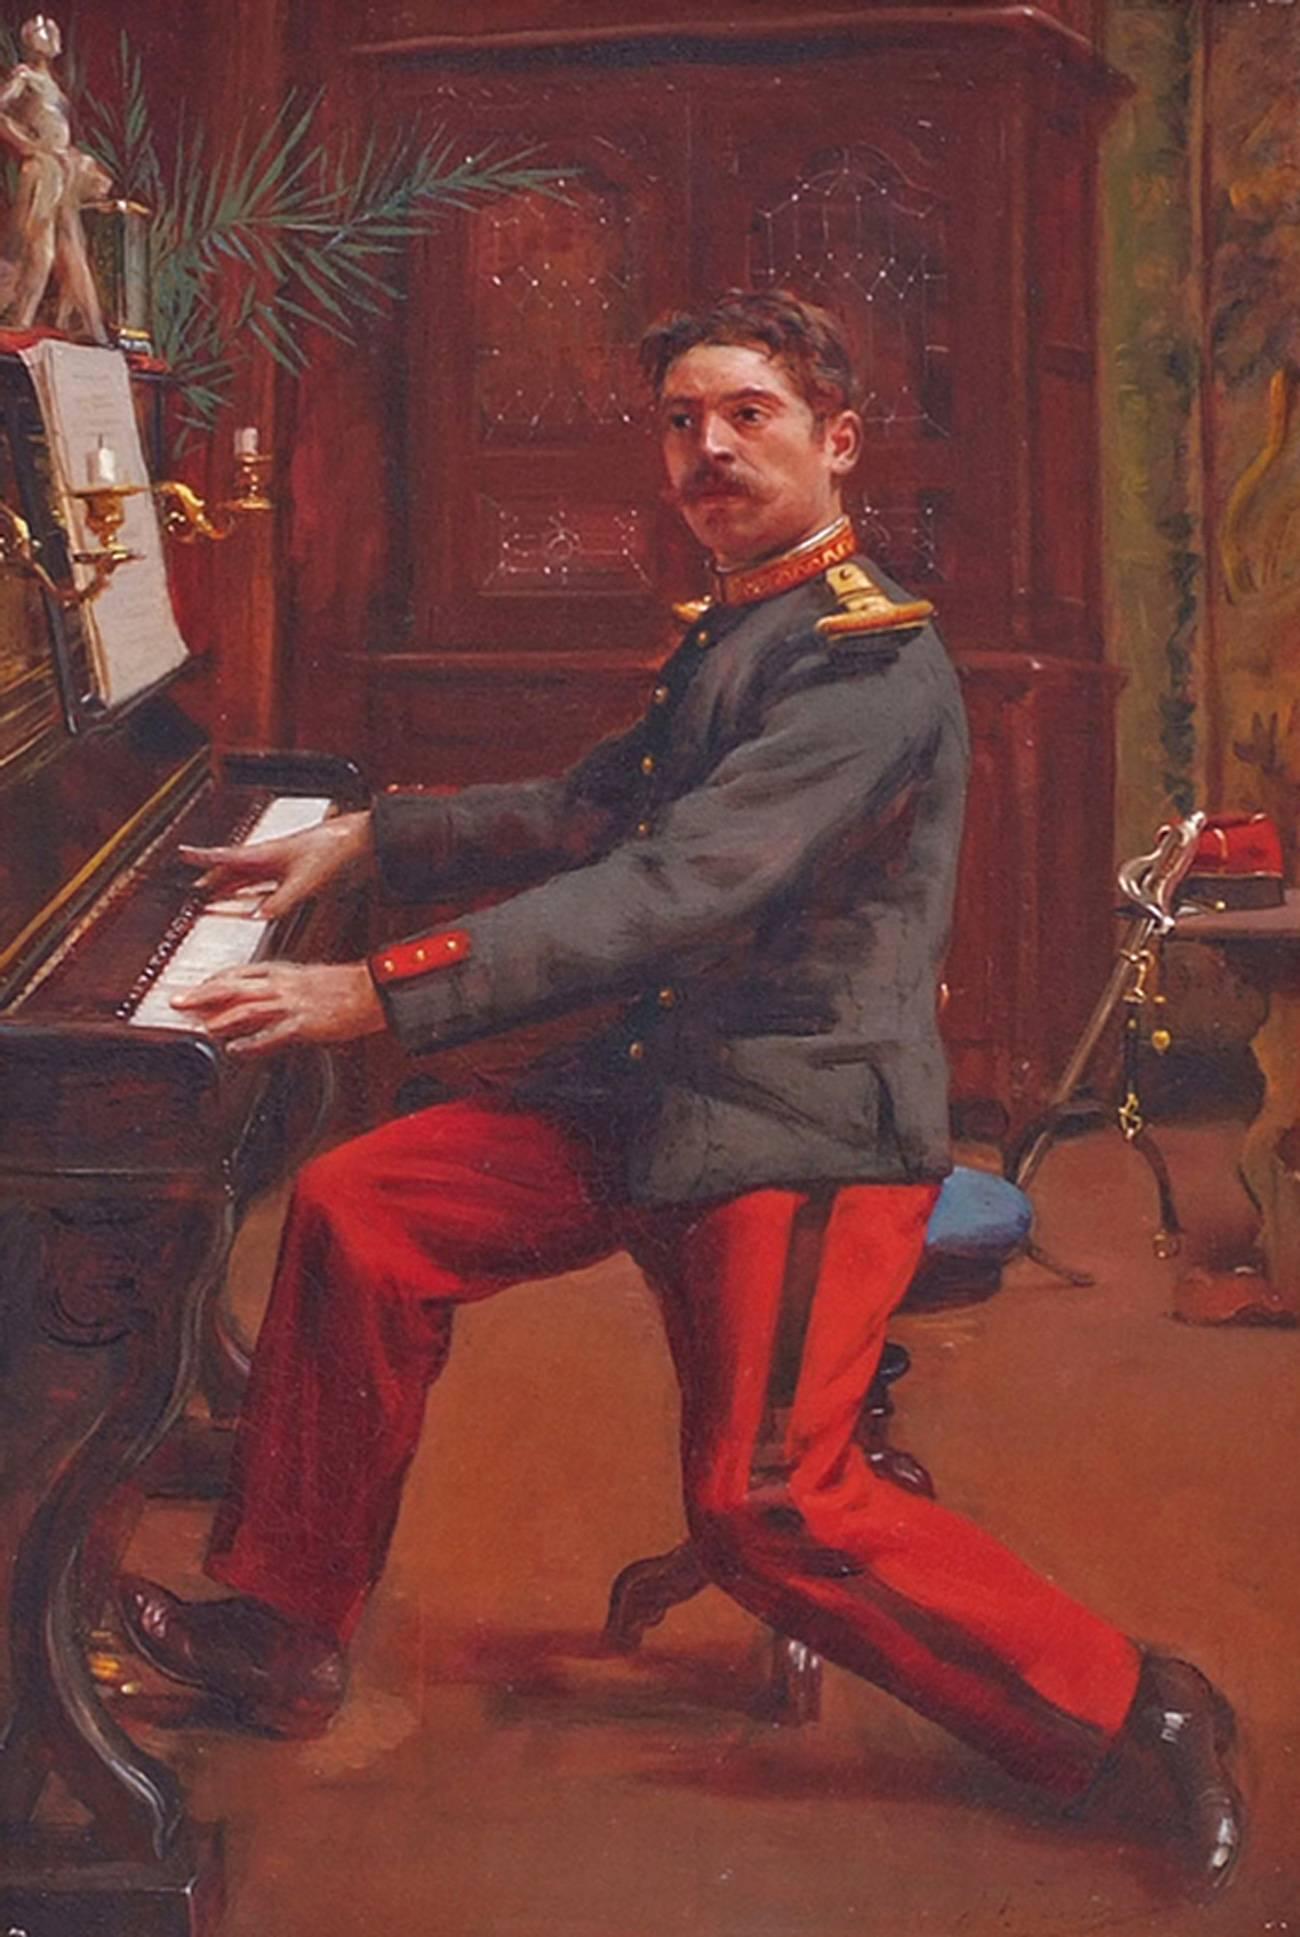 Gemälde einer Soldatenuniform aus dem 19. Jahrhundert, TOULOT (1863-nc), von Jules TOULOT (Akademisch), Painting, von Toulot Jules  